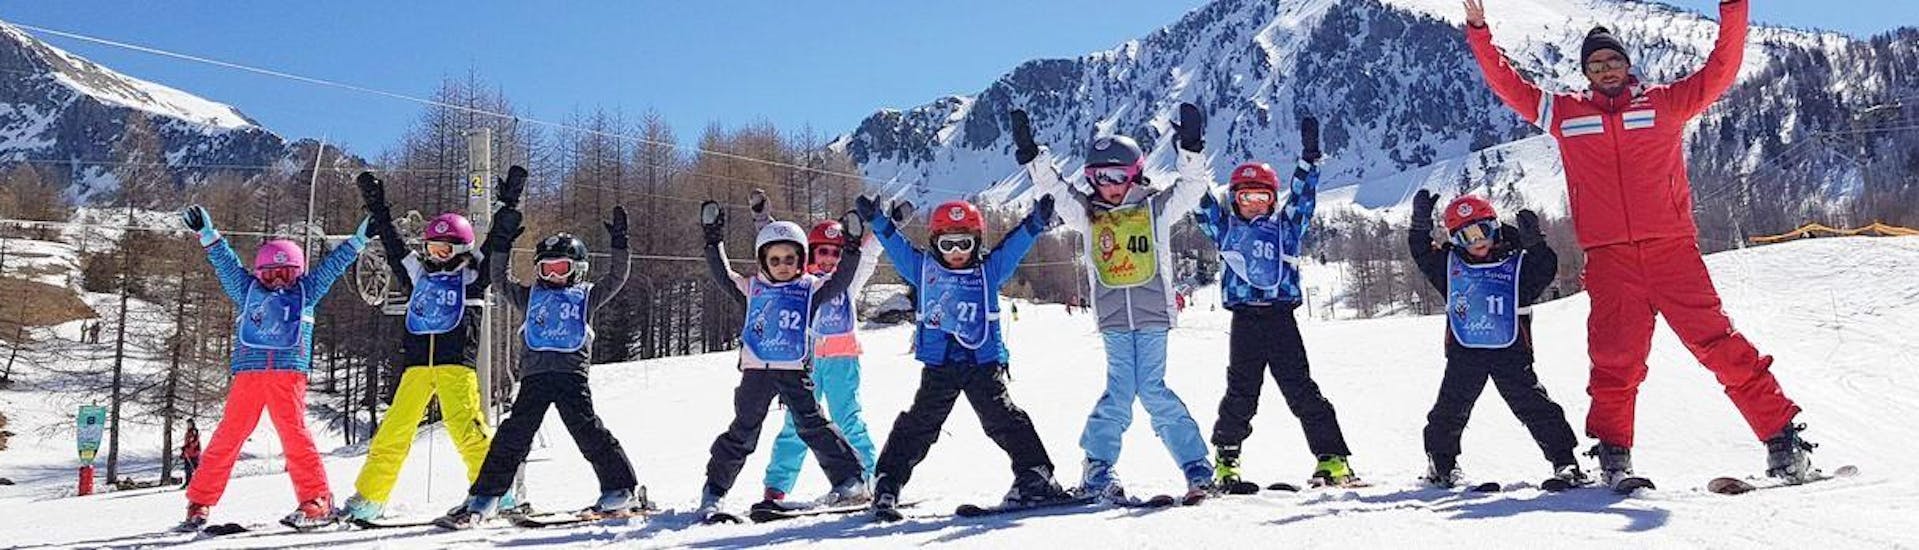 Les enfants sont debout les uns à côté des autres au bas d'une pente, heureux de commencer à apprendre à skier pendant leur Cours de ski Enfants (7-12 ans) pour Tous niveaux avec l'école de ski ESF Isola 2000.